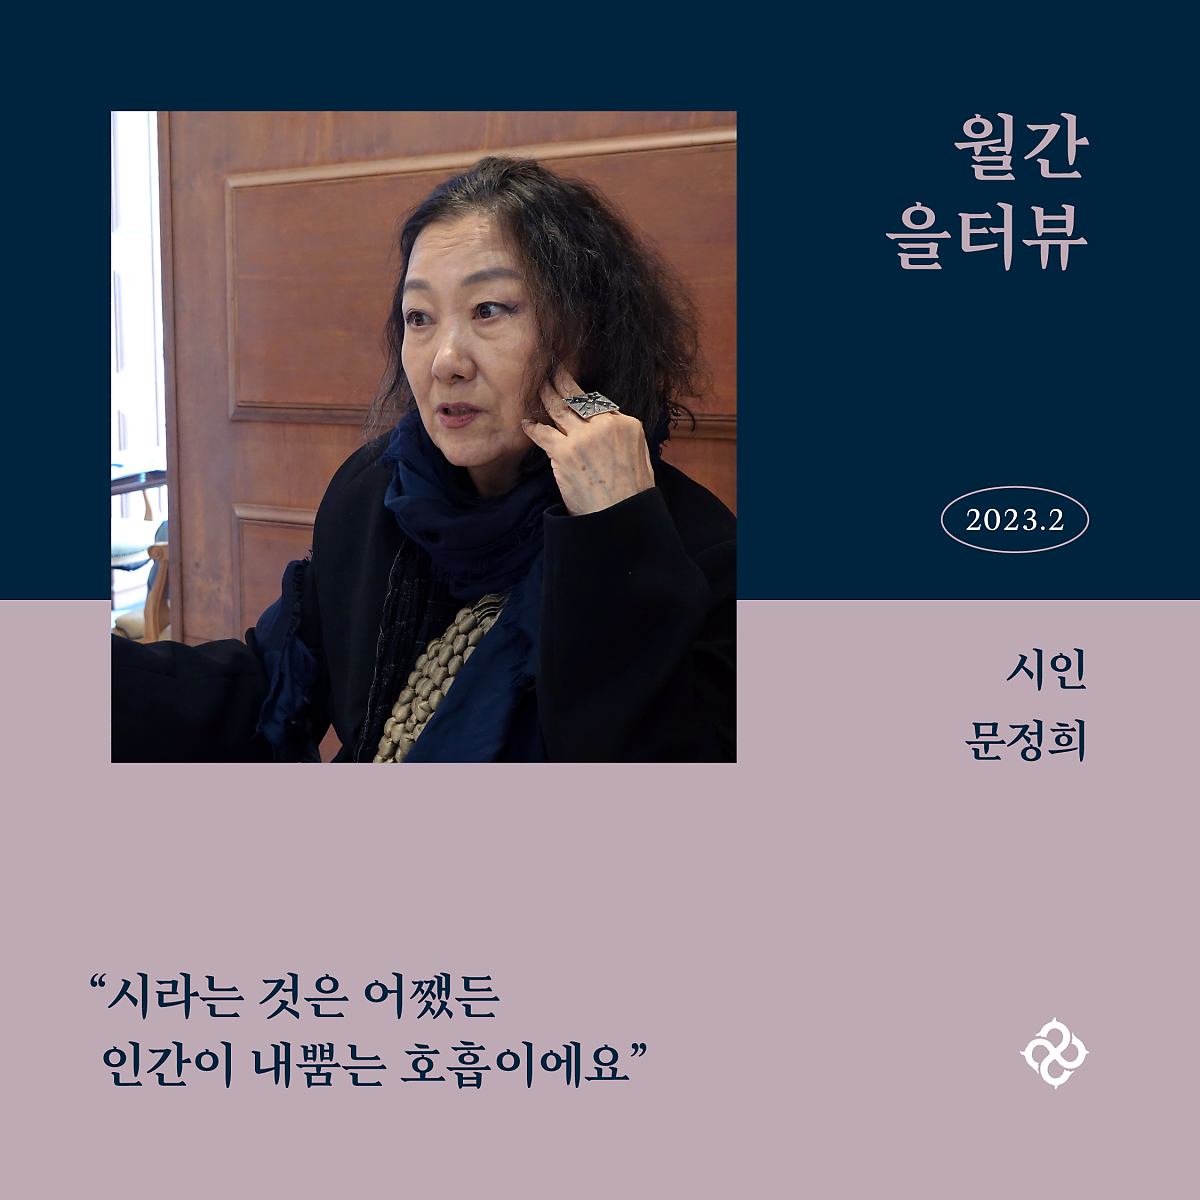 월간 을터뷰 11 『영롱보다 몽롱』 문정희 시인 네이버 포스트 